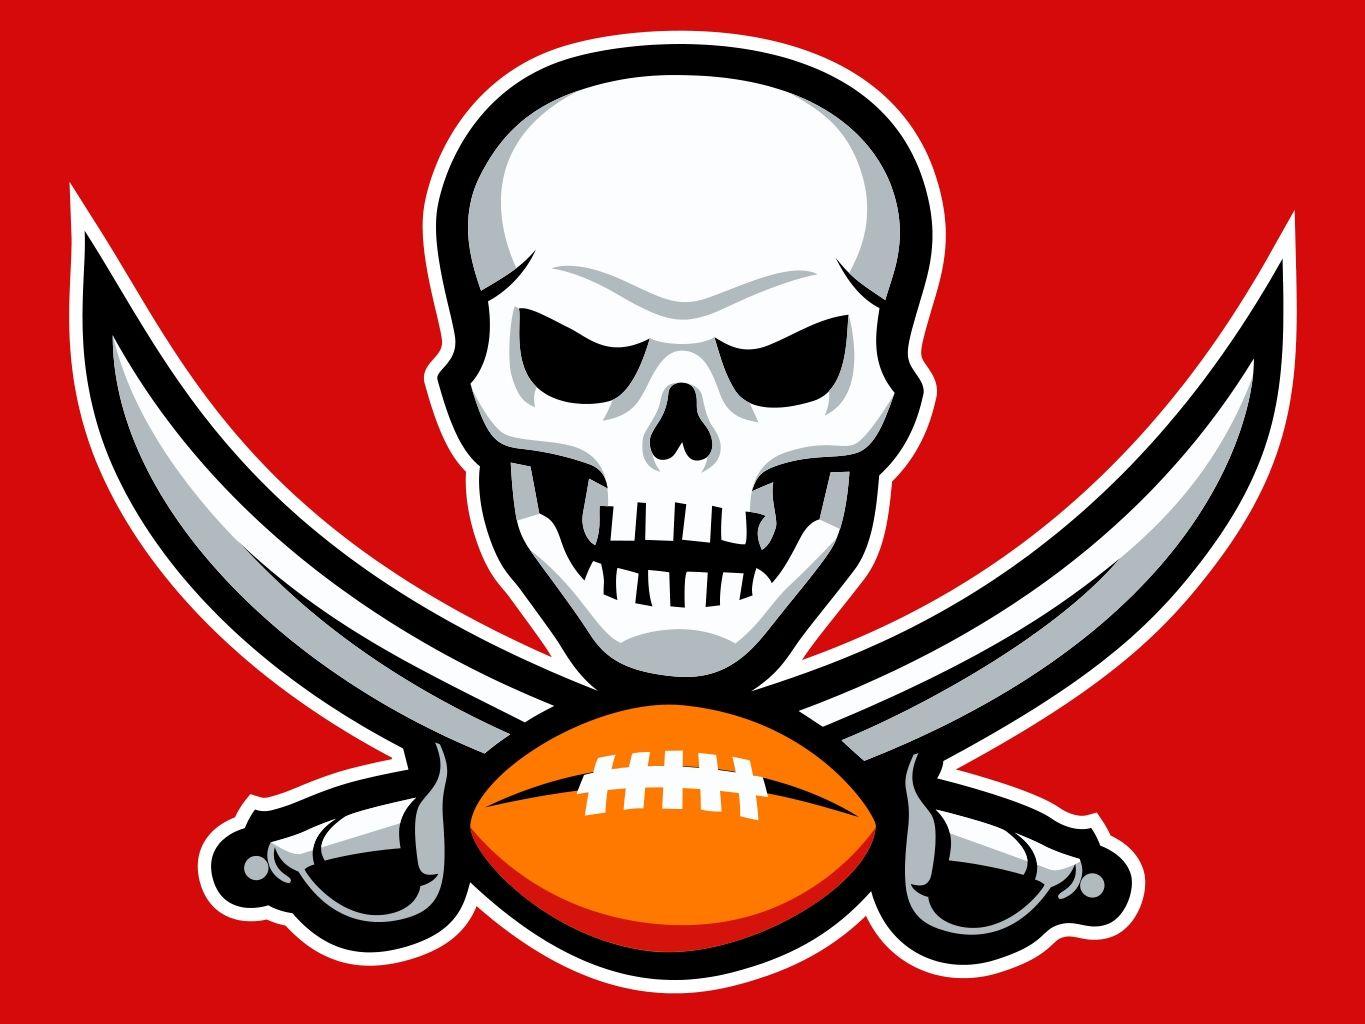 Tampa Bay Buccaneers Logo - Pin by Chris Basten on NFL Logos | Tampa Bay Buccaneers, Buccaneers ...